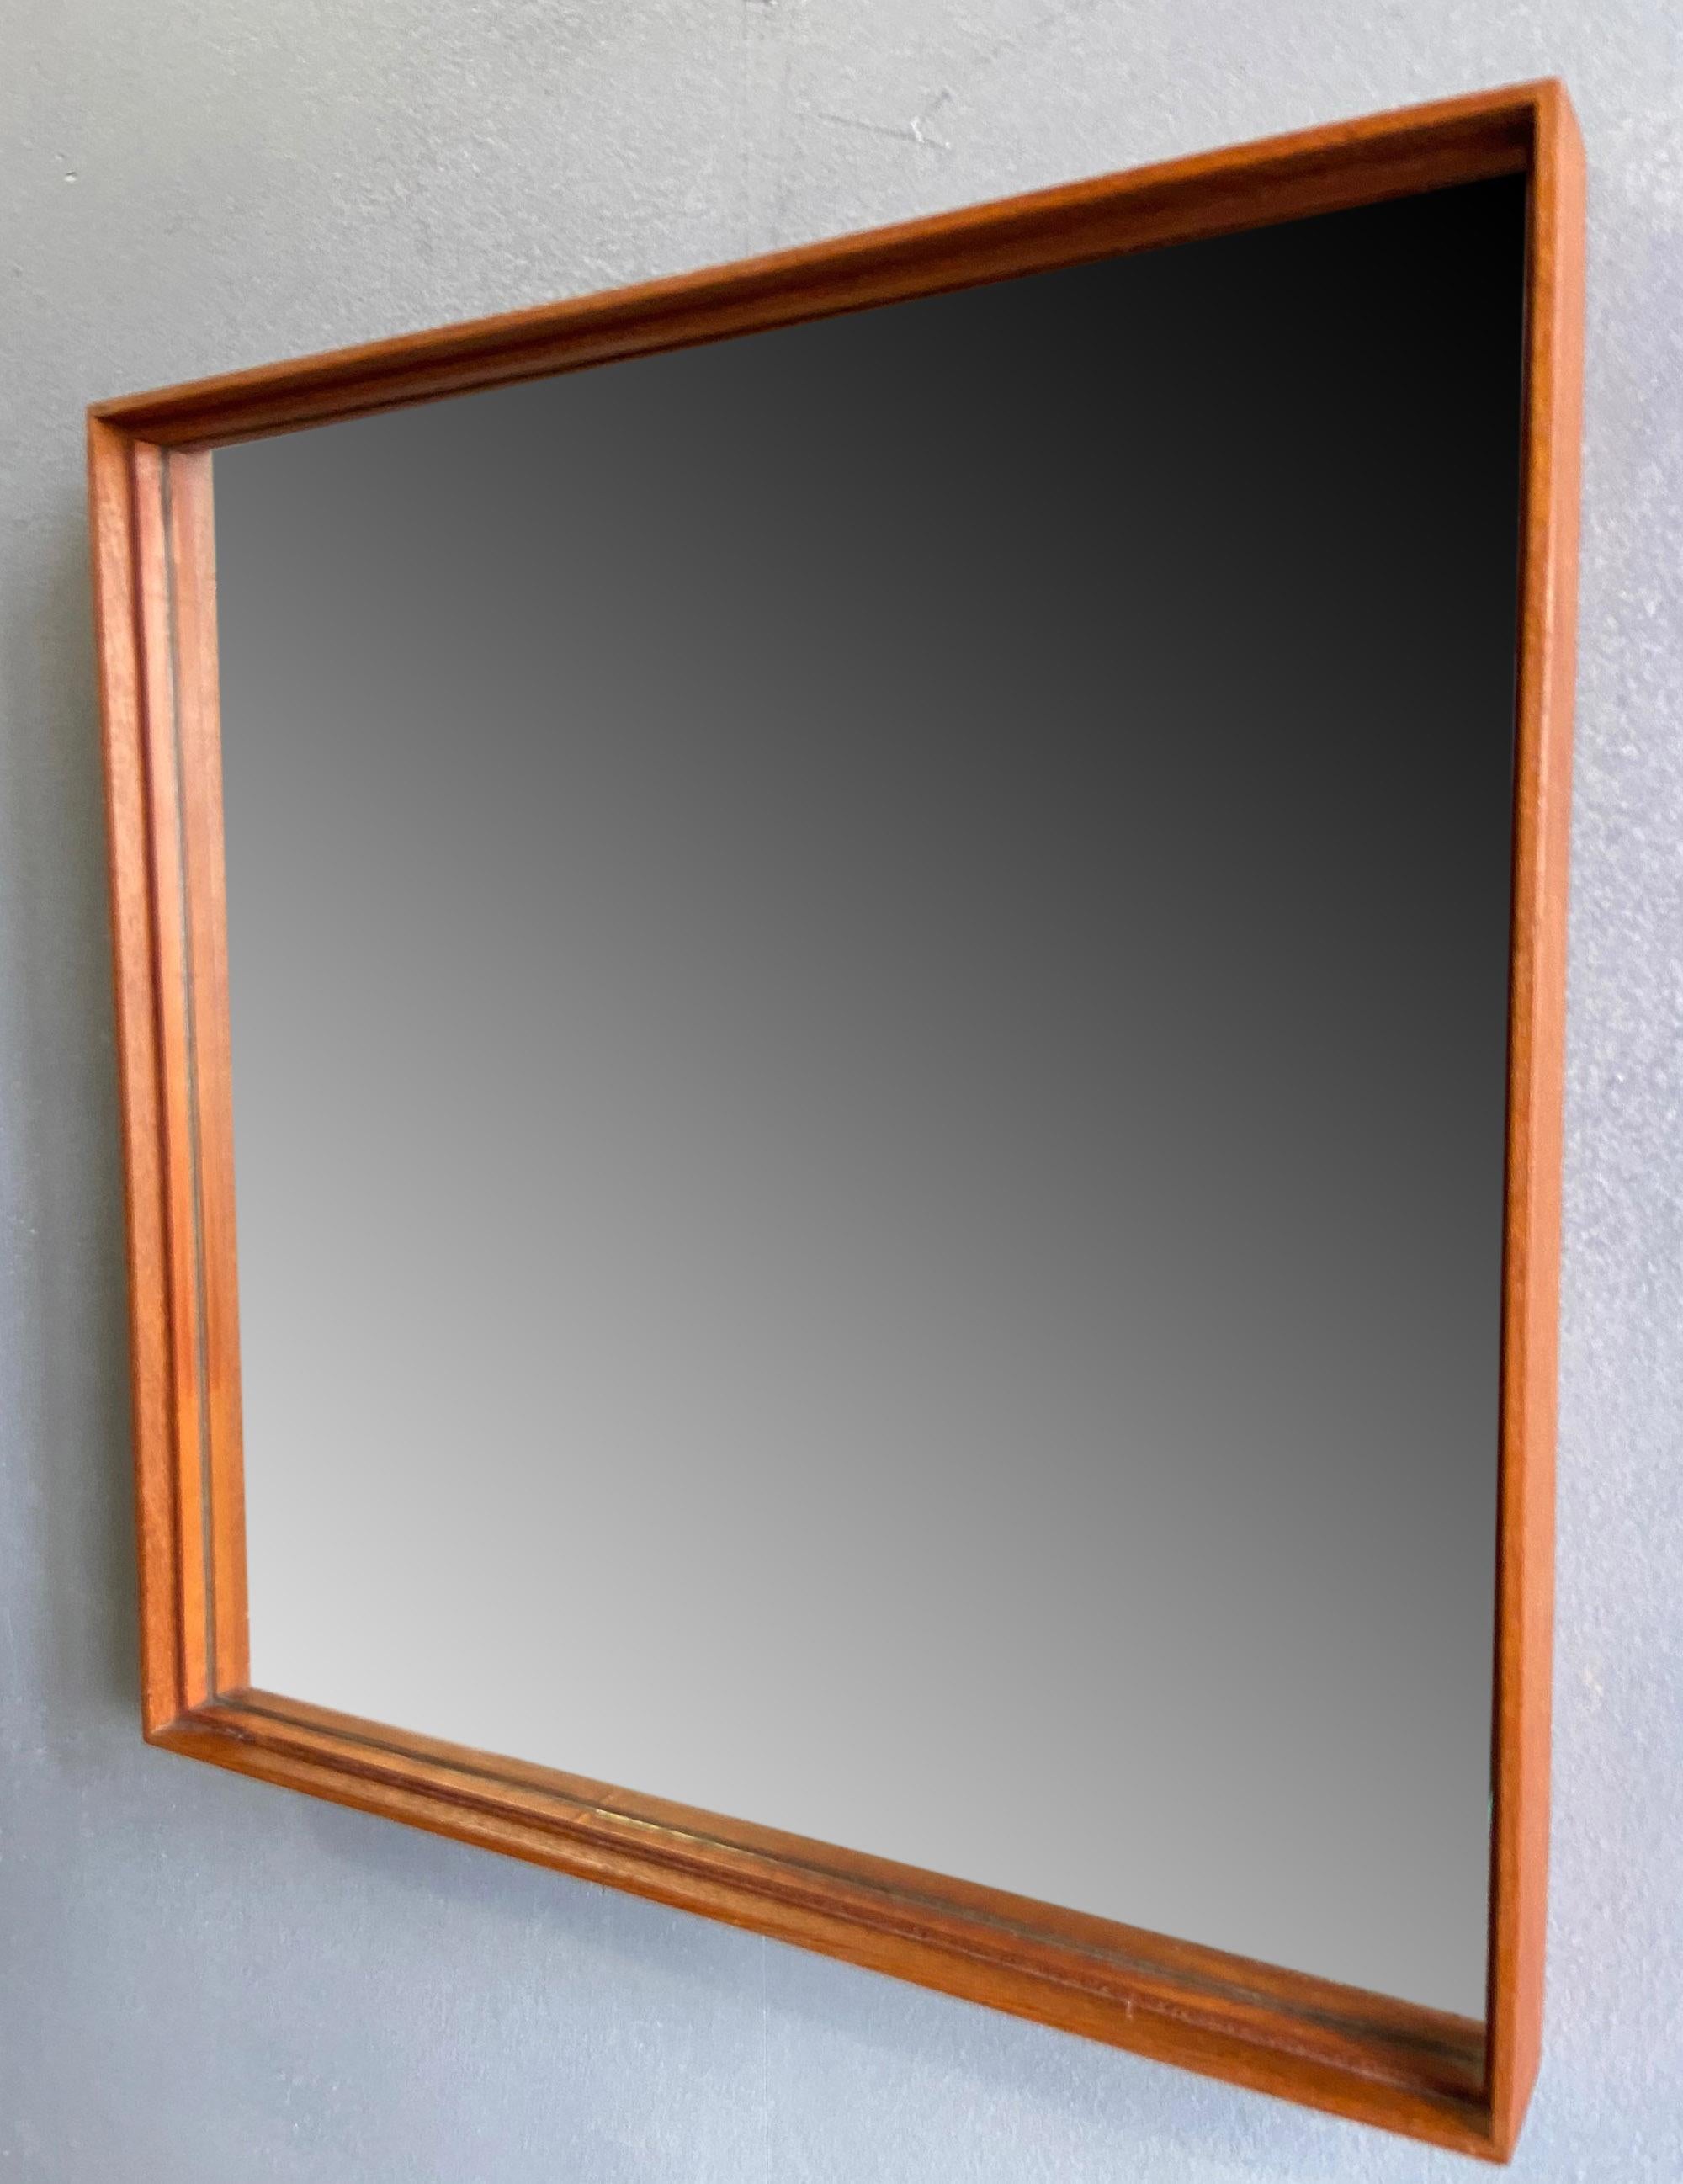 Midcentury Teak Mirror by Uno & Osten Kristiansson for Glas Mäster For Sale 3